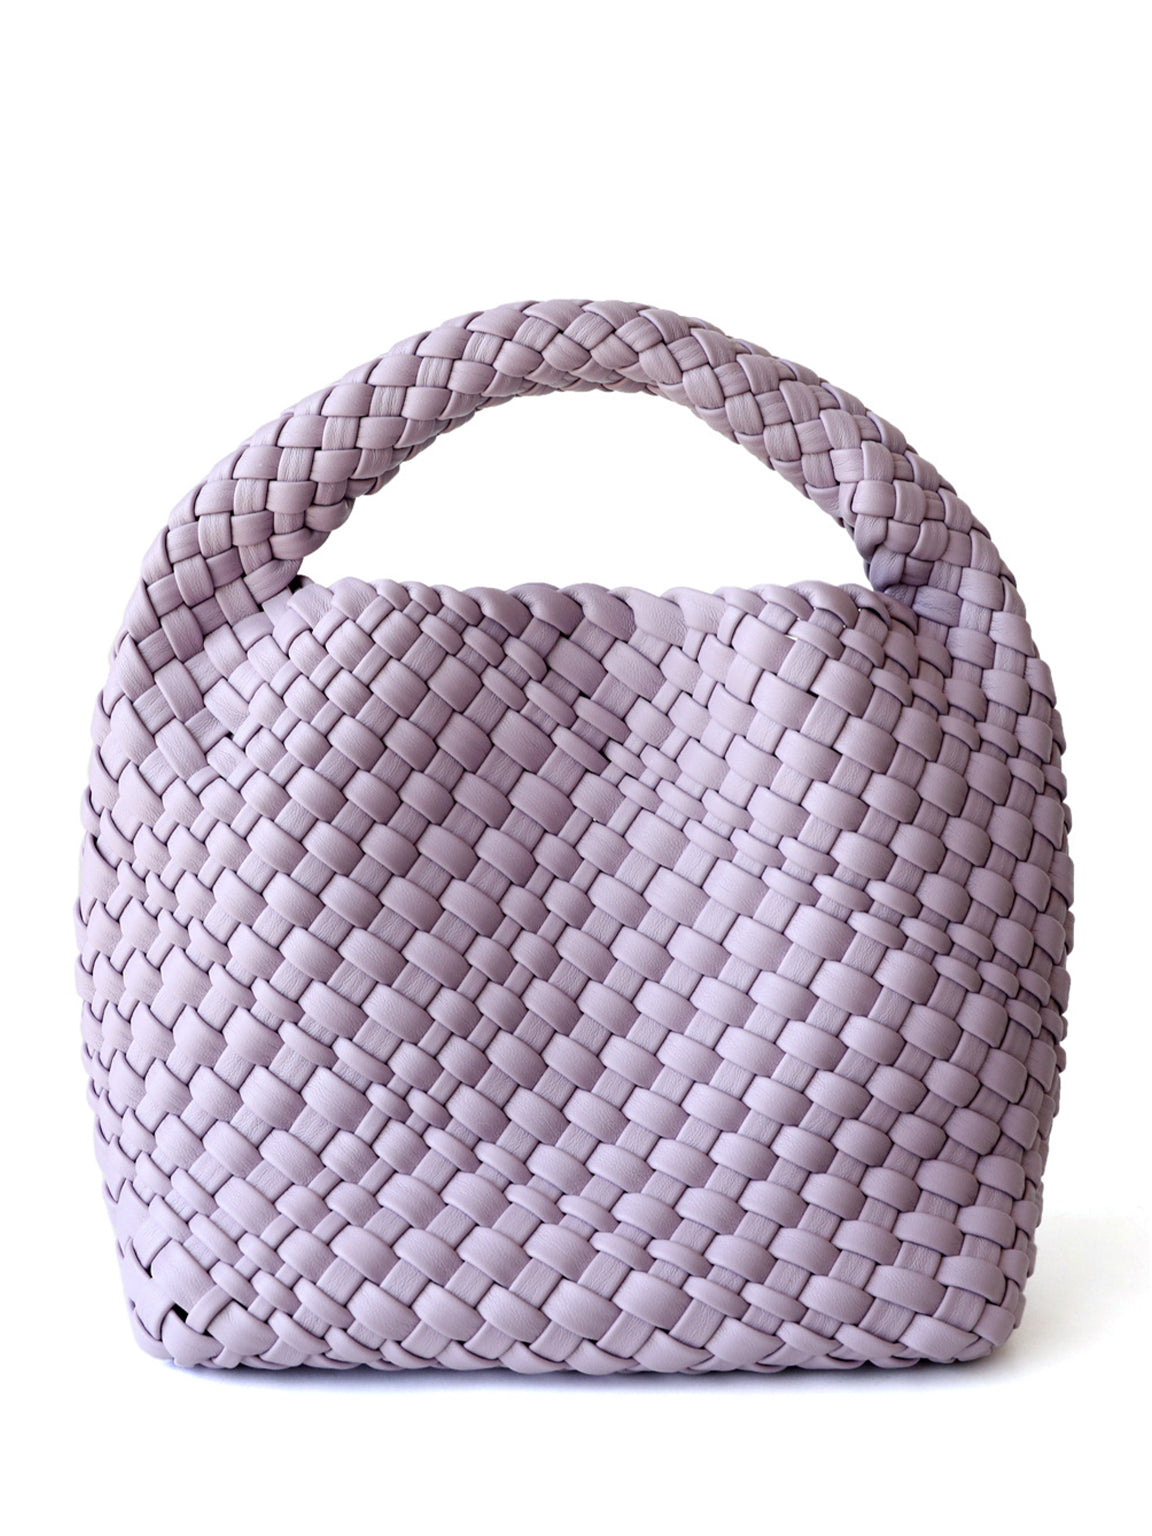 TOGO Handmade Bucket Shoulder Bag - Apricot